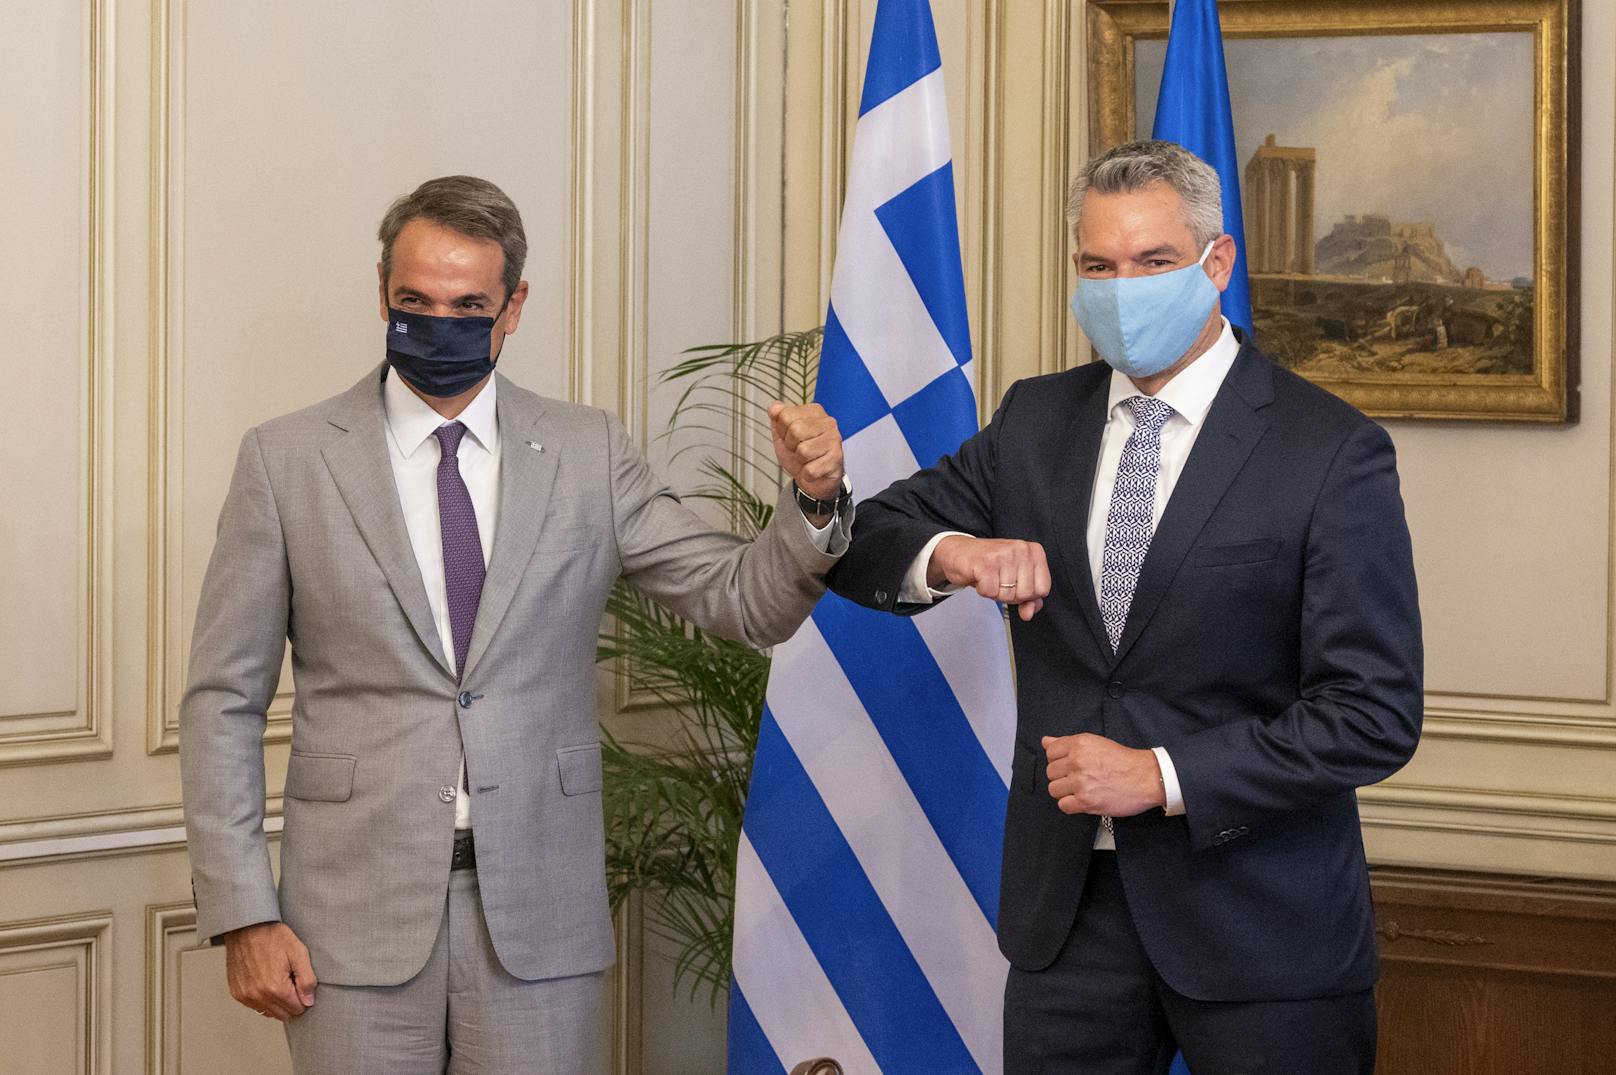 Griechenlands Regierungschef Kyriakos Mitsotakis und Innenminister Karl Nehammer